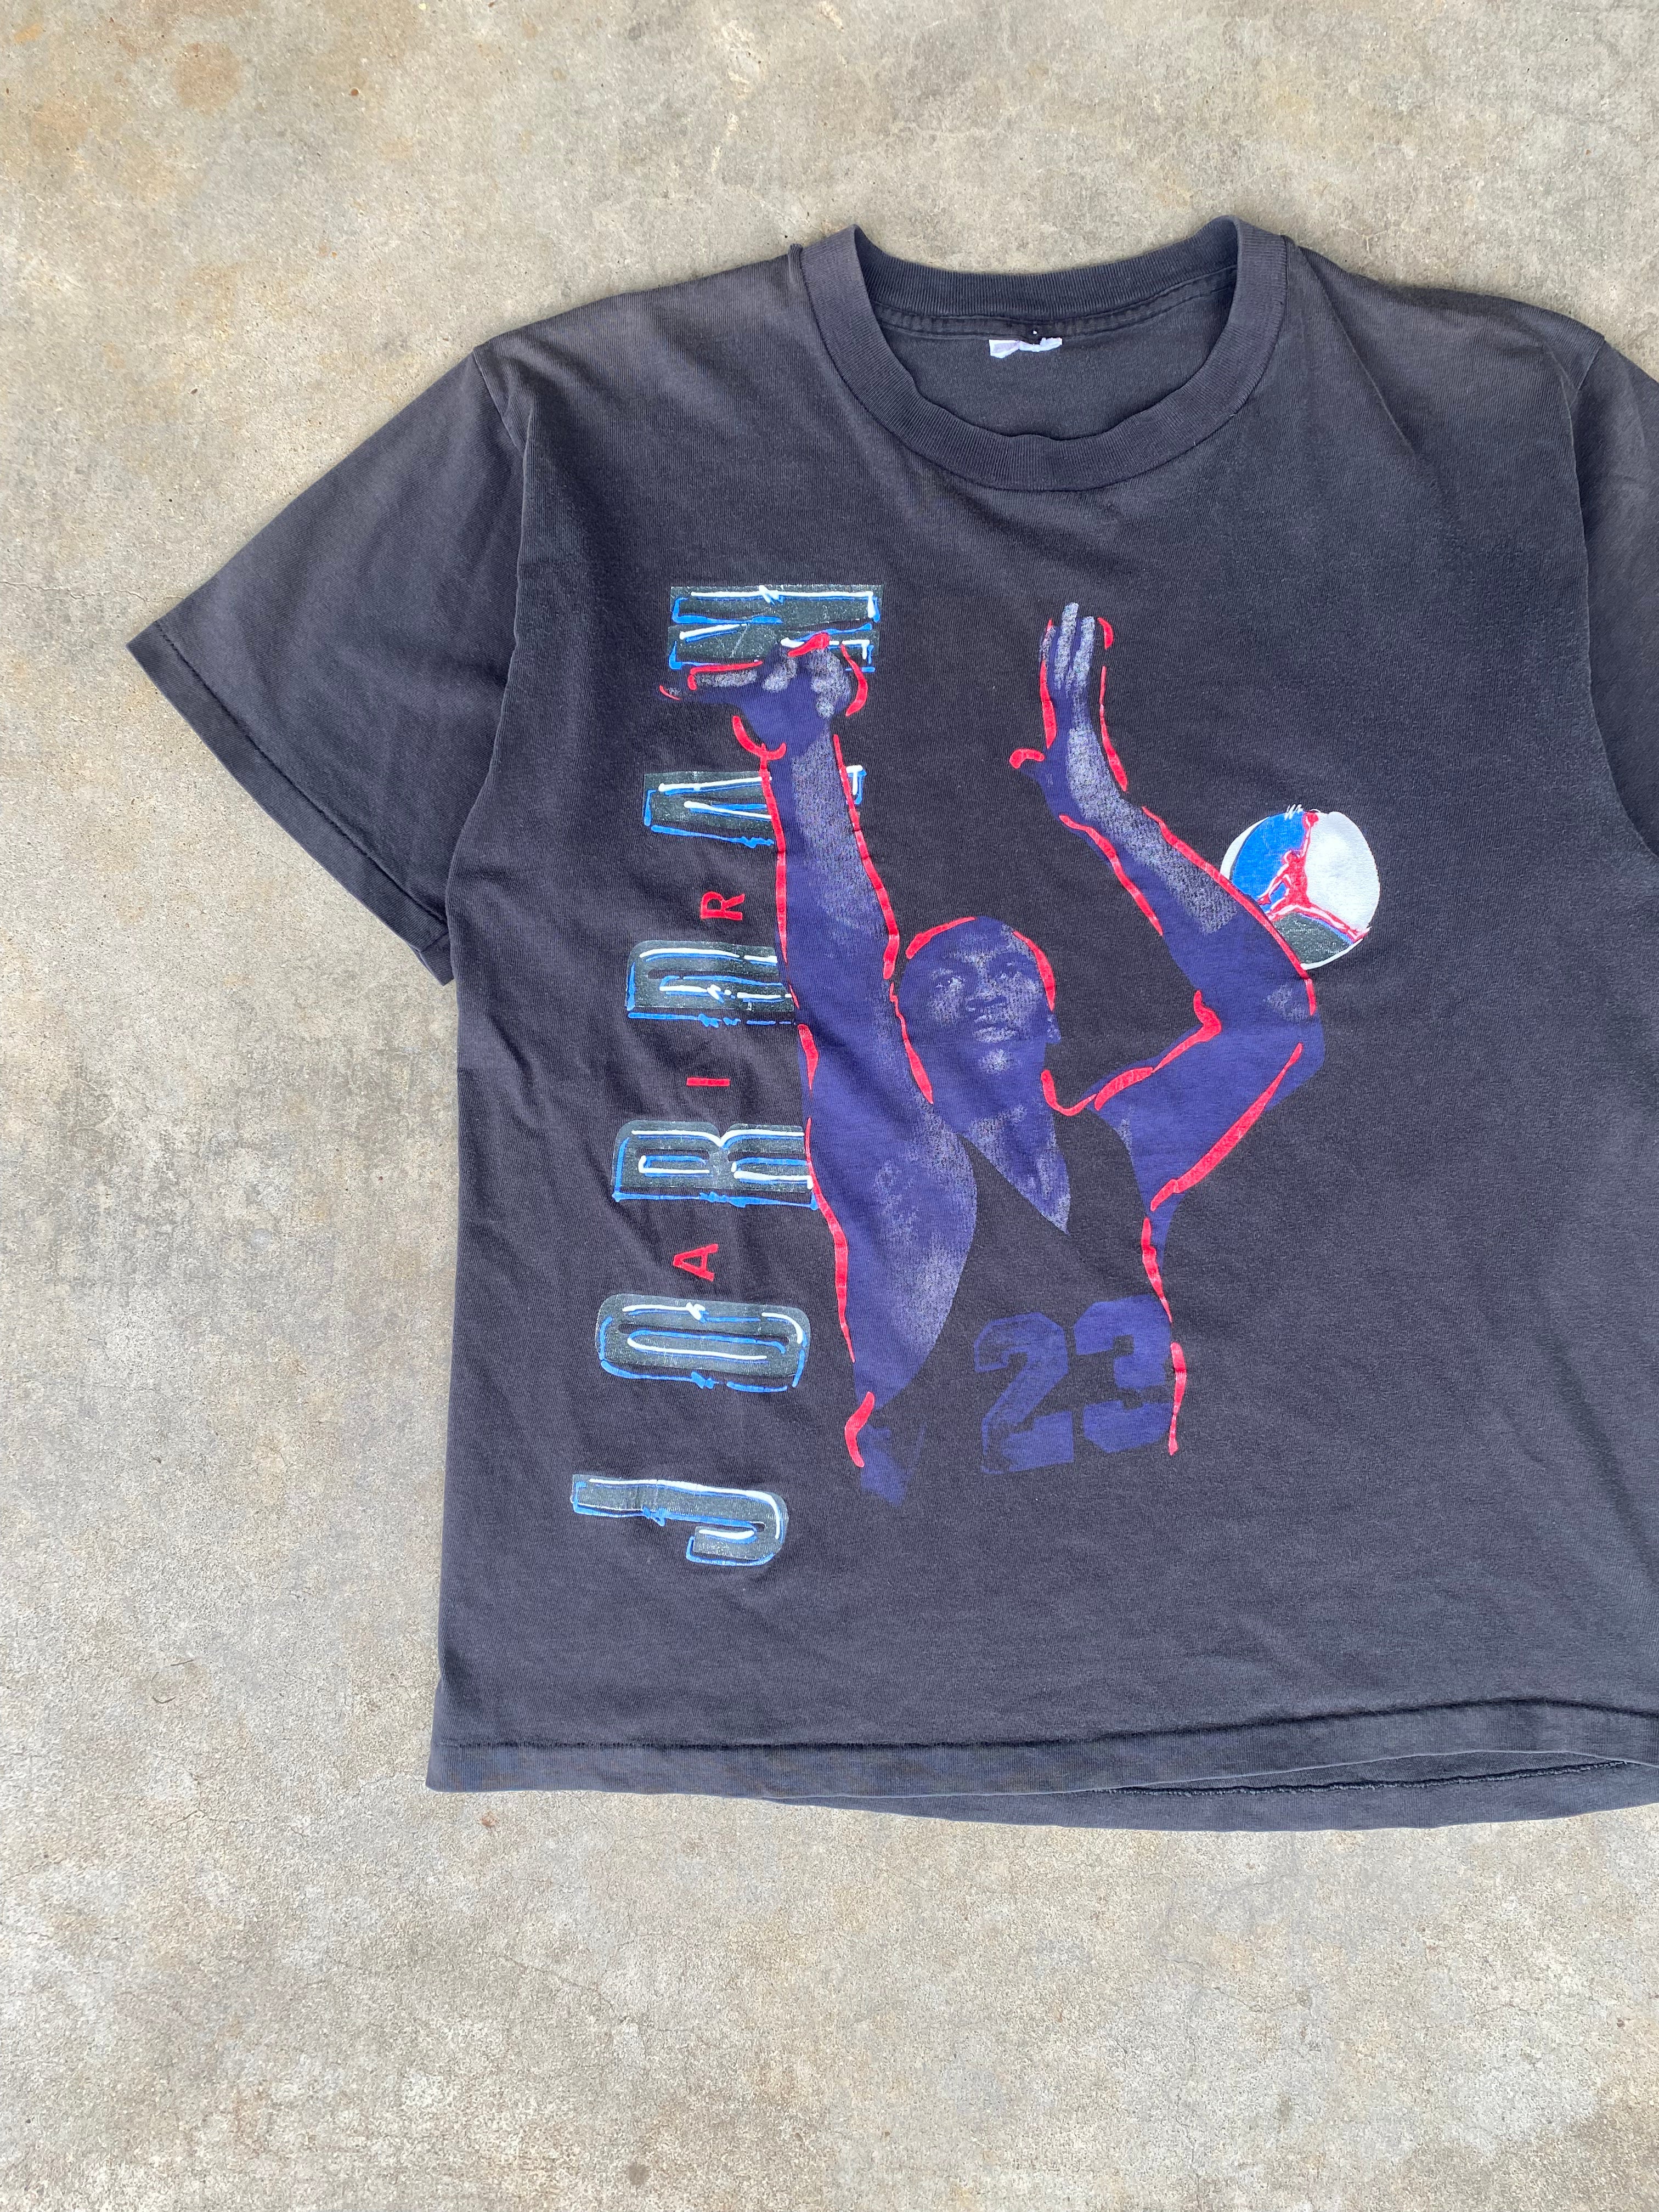 1990s Nike Air Jordan T-Shirt (M)